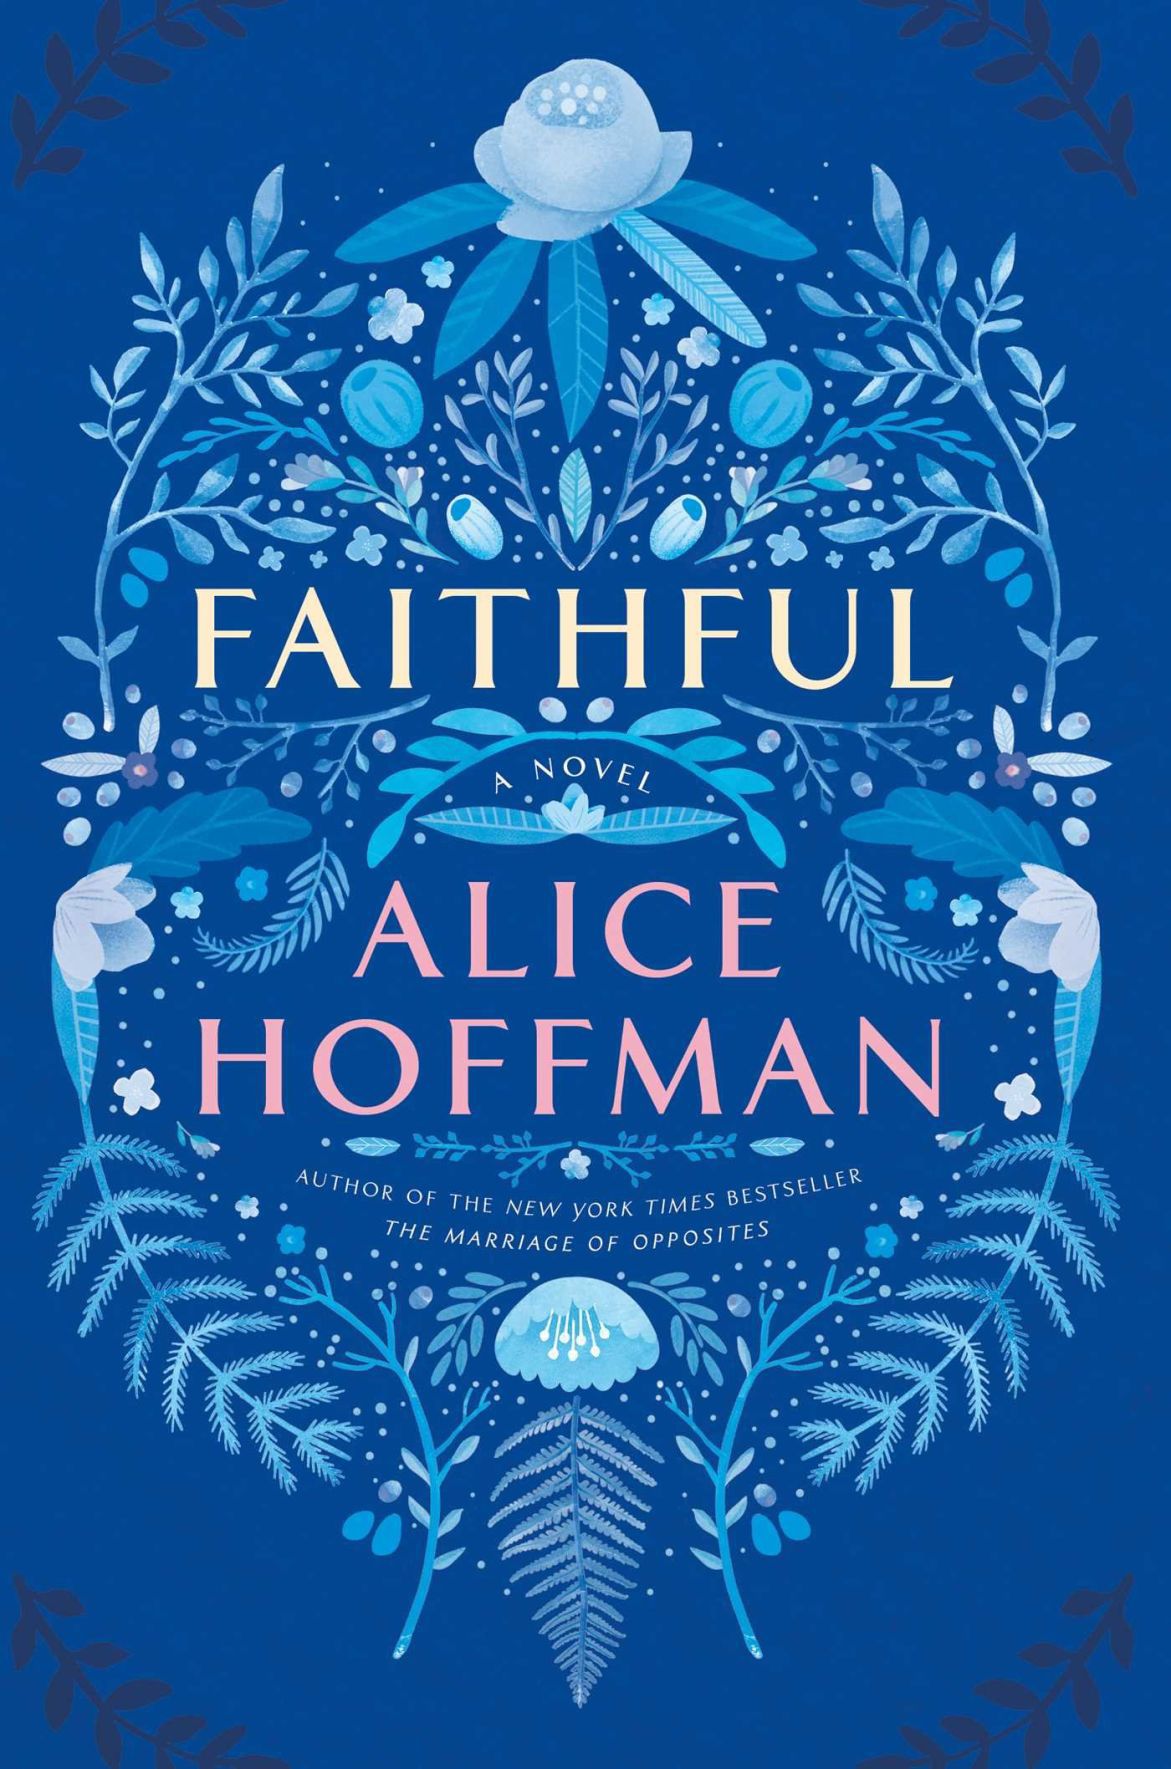 faithful by alice hoffman summary